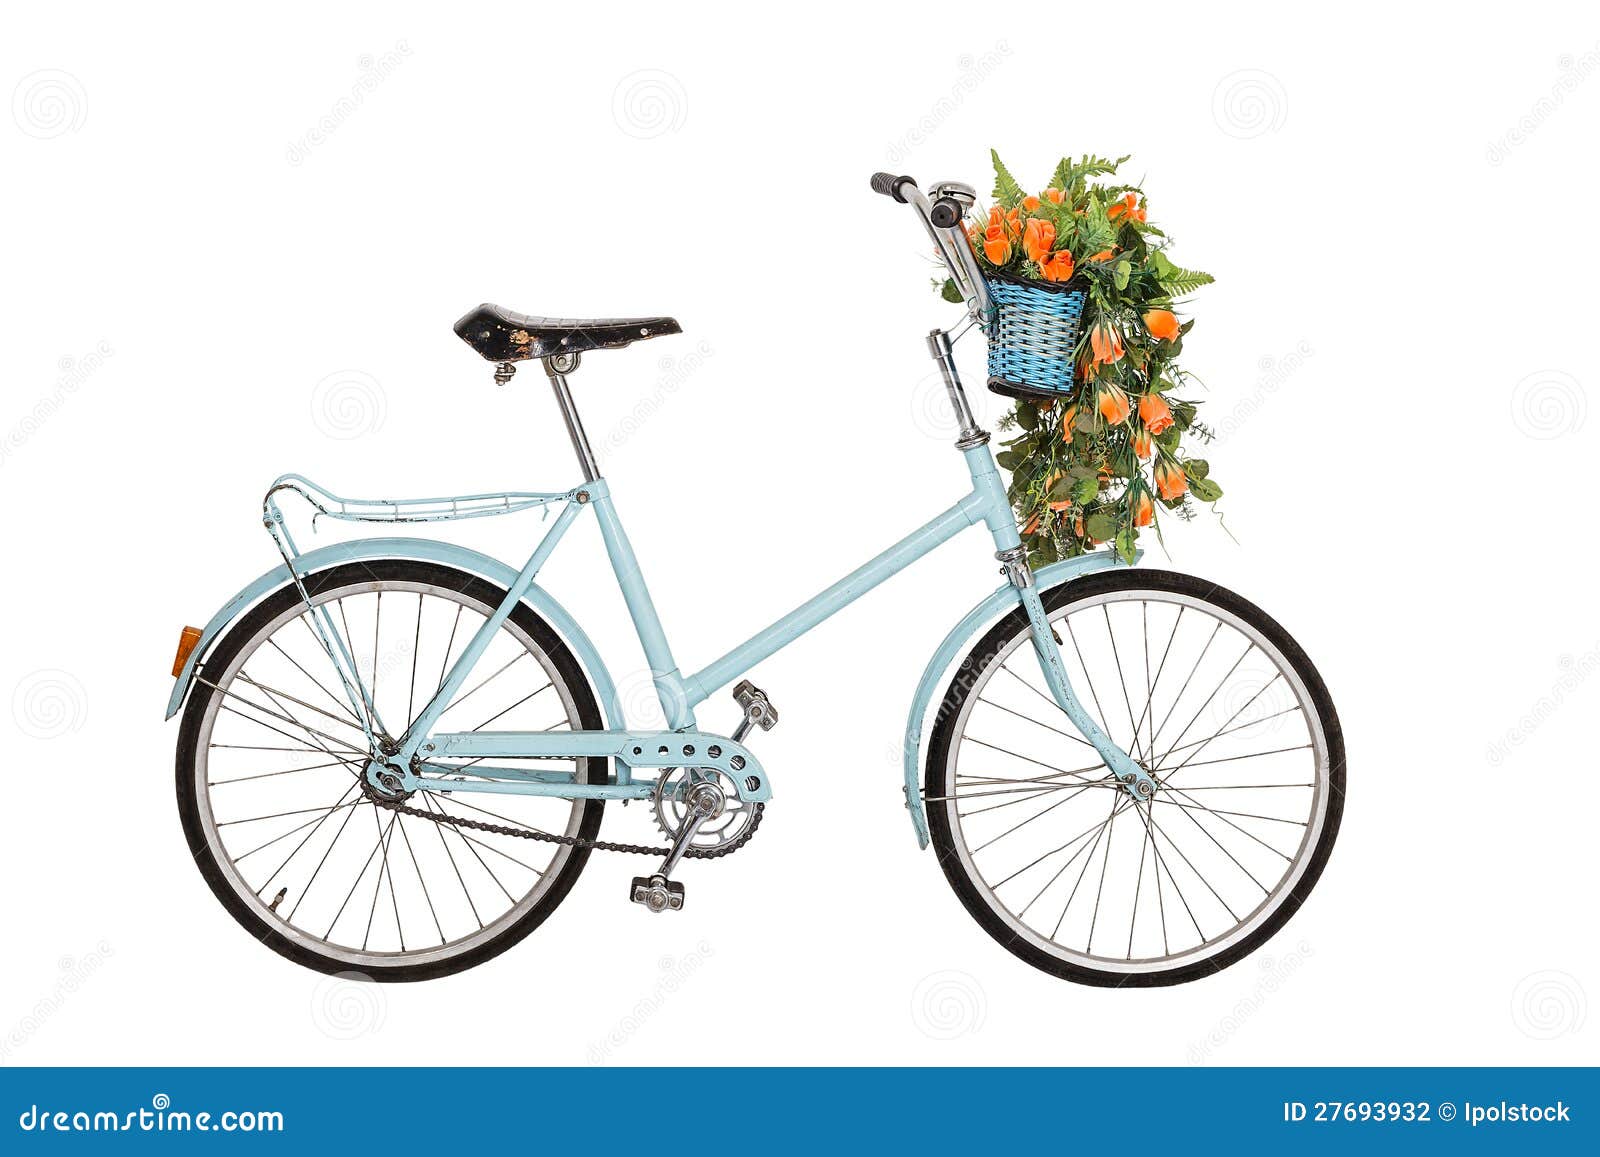 Παλαιό αναδρομικό ποδήλατο με τα λουλούδια. Παλαιό αναδρομικό μπλε ποδήλατο με την ανθοδέσμη λουλουδιών στο καλάθι που απομονώνεται στην άσπρη ανασκόπηση